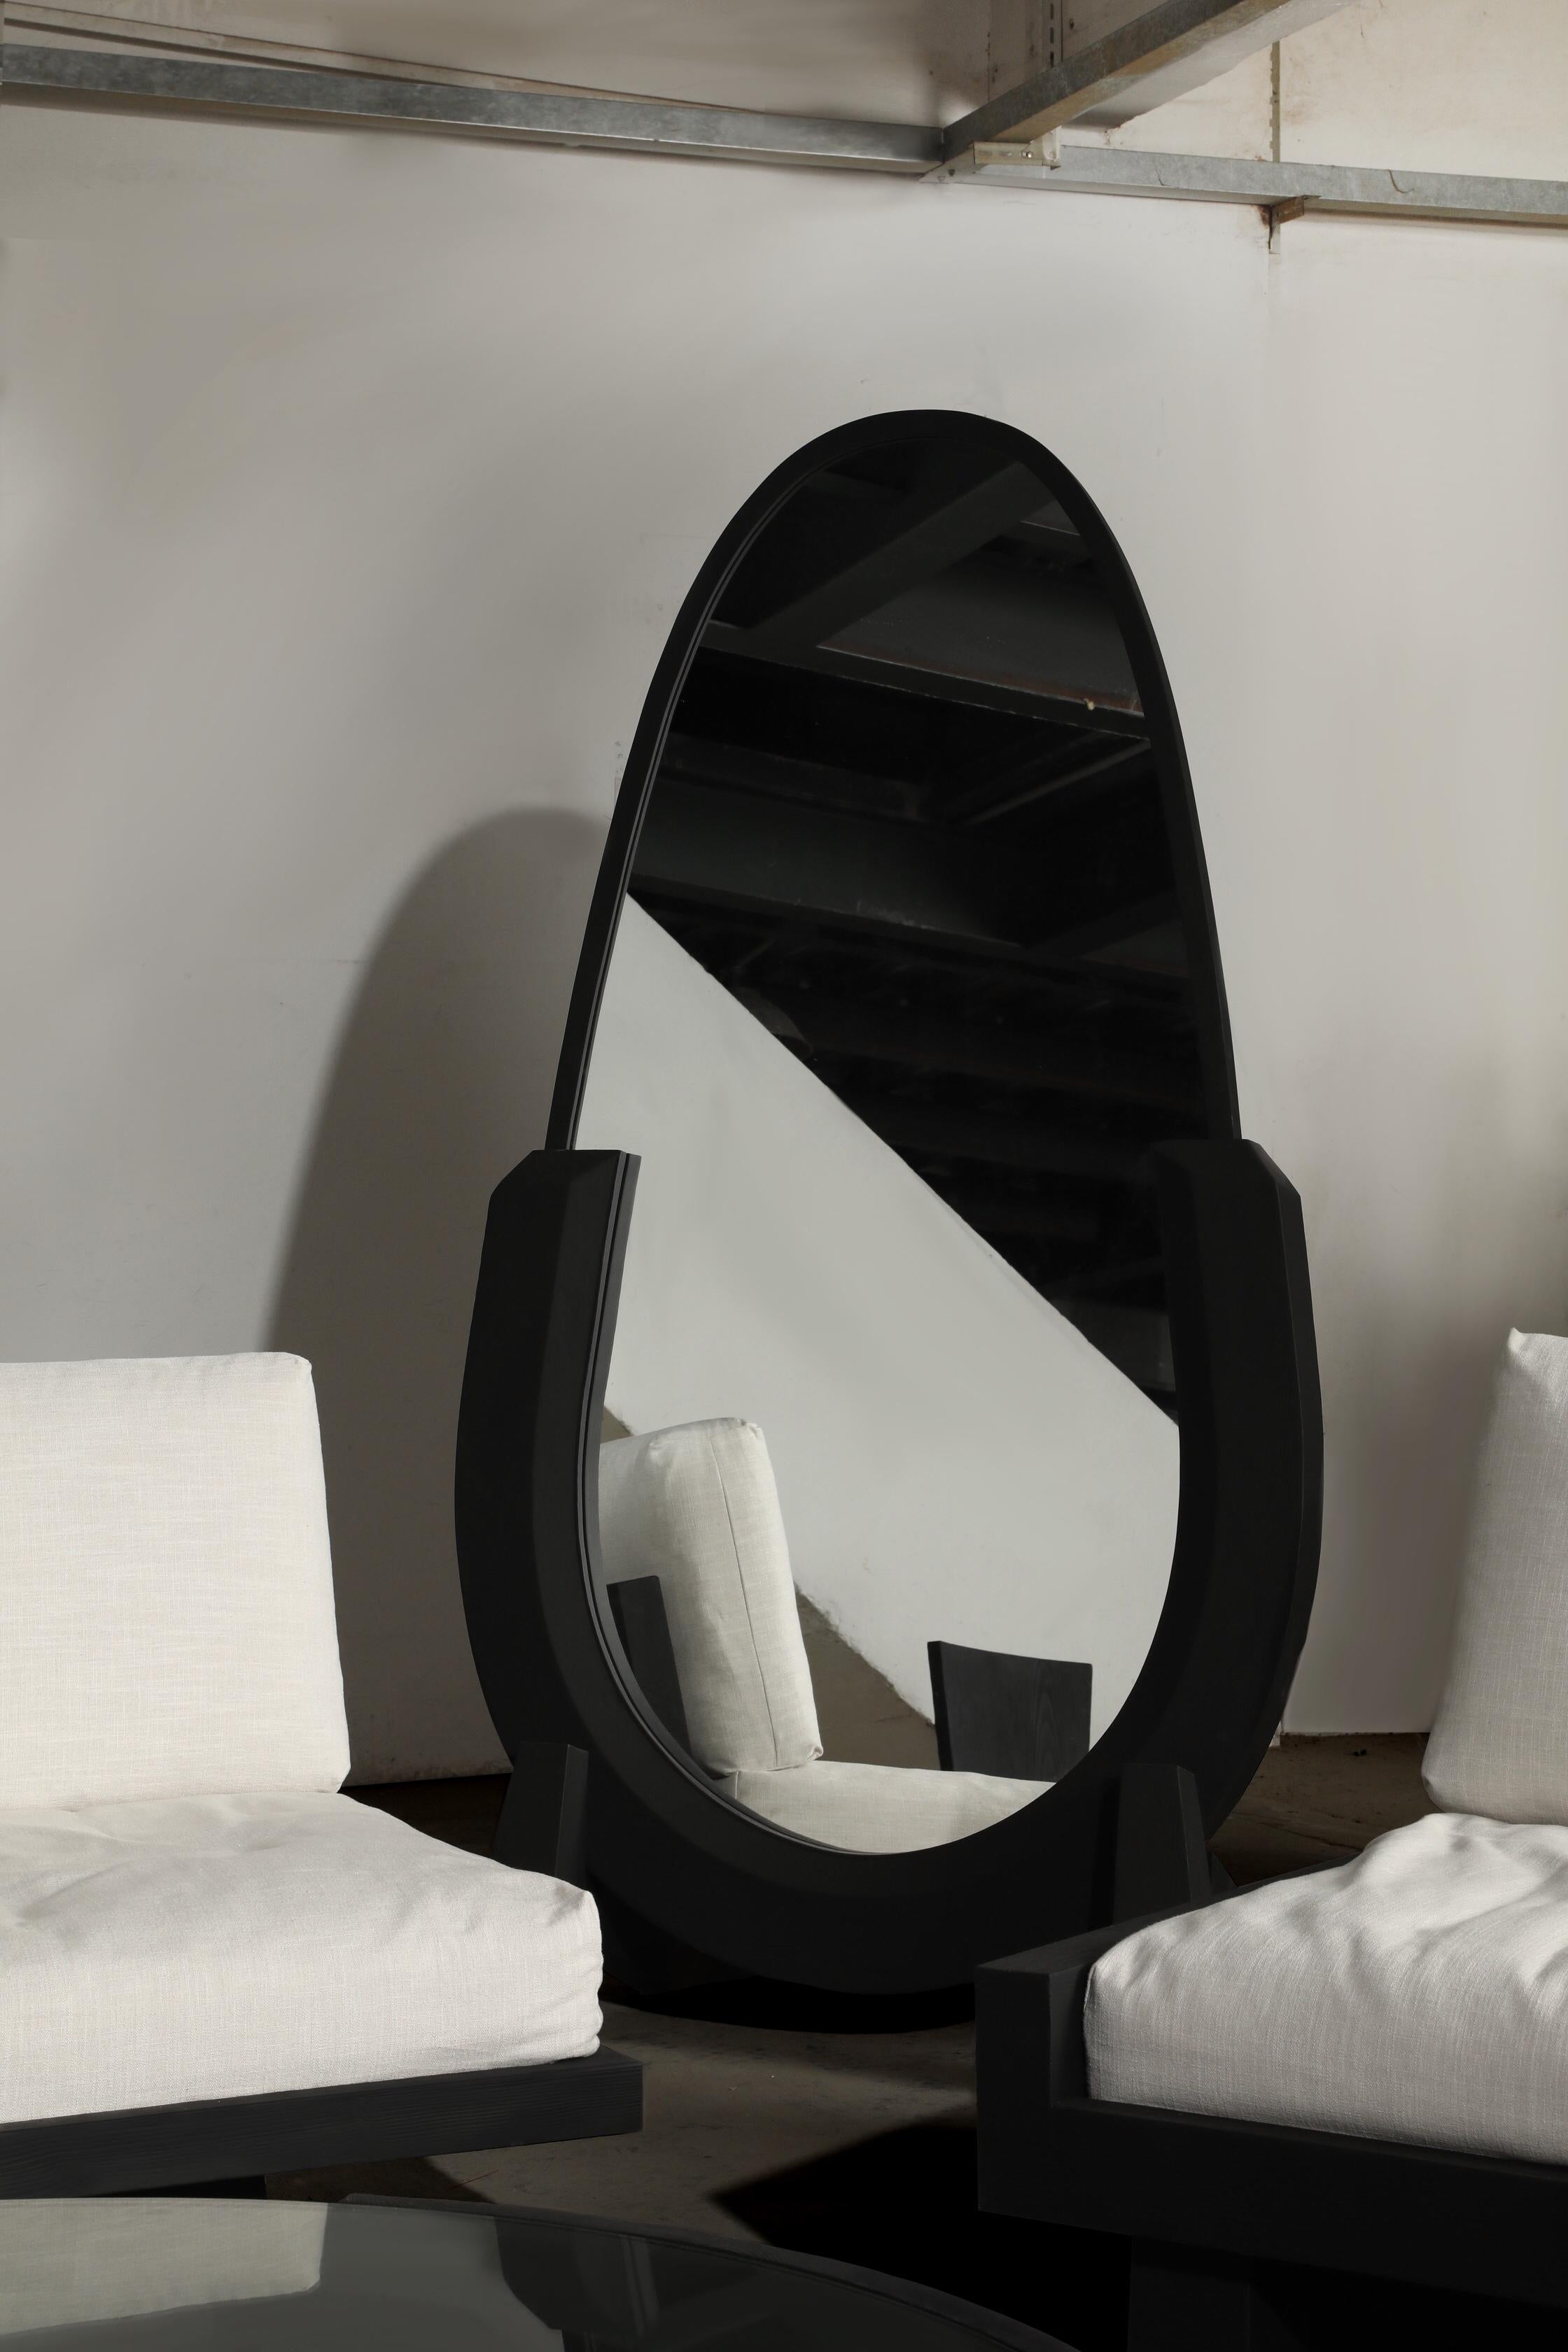 Dieser Ganzkörperspiegel wurde von den Designern Diamant und Fu für Mirk Woo entworfen. Um Möbel im Stil der Retro-Avantgarde-Barbarei zu schaffen, werden klassische Hufeisenelemente integriert. Der Karbonisierungsprozess des gesamten Körpers kann